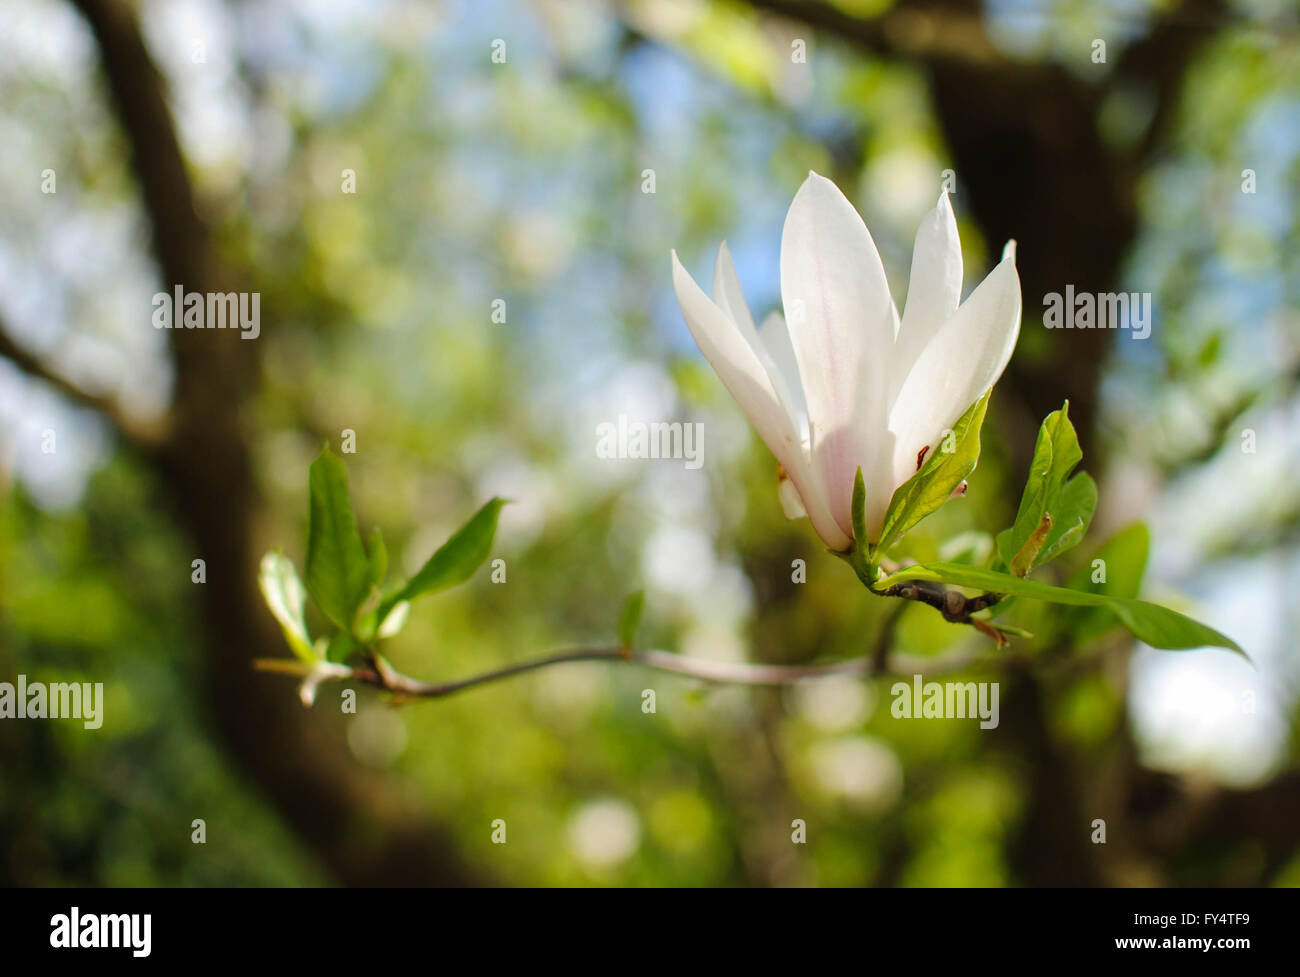 Una magnolia simboliza a menudo el lado femenino de la vida. Foto de stock